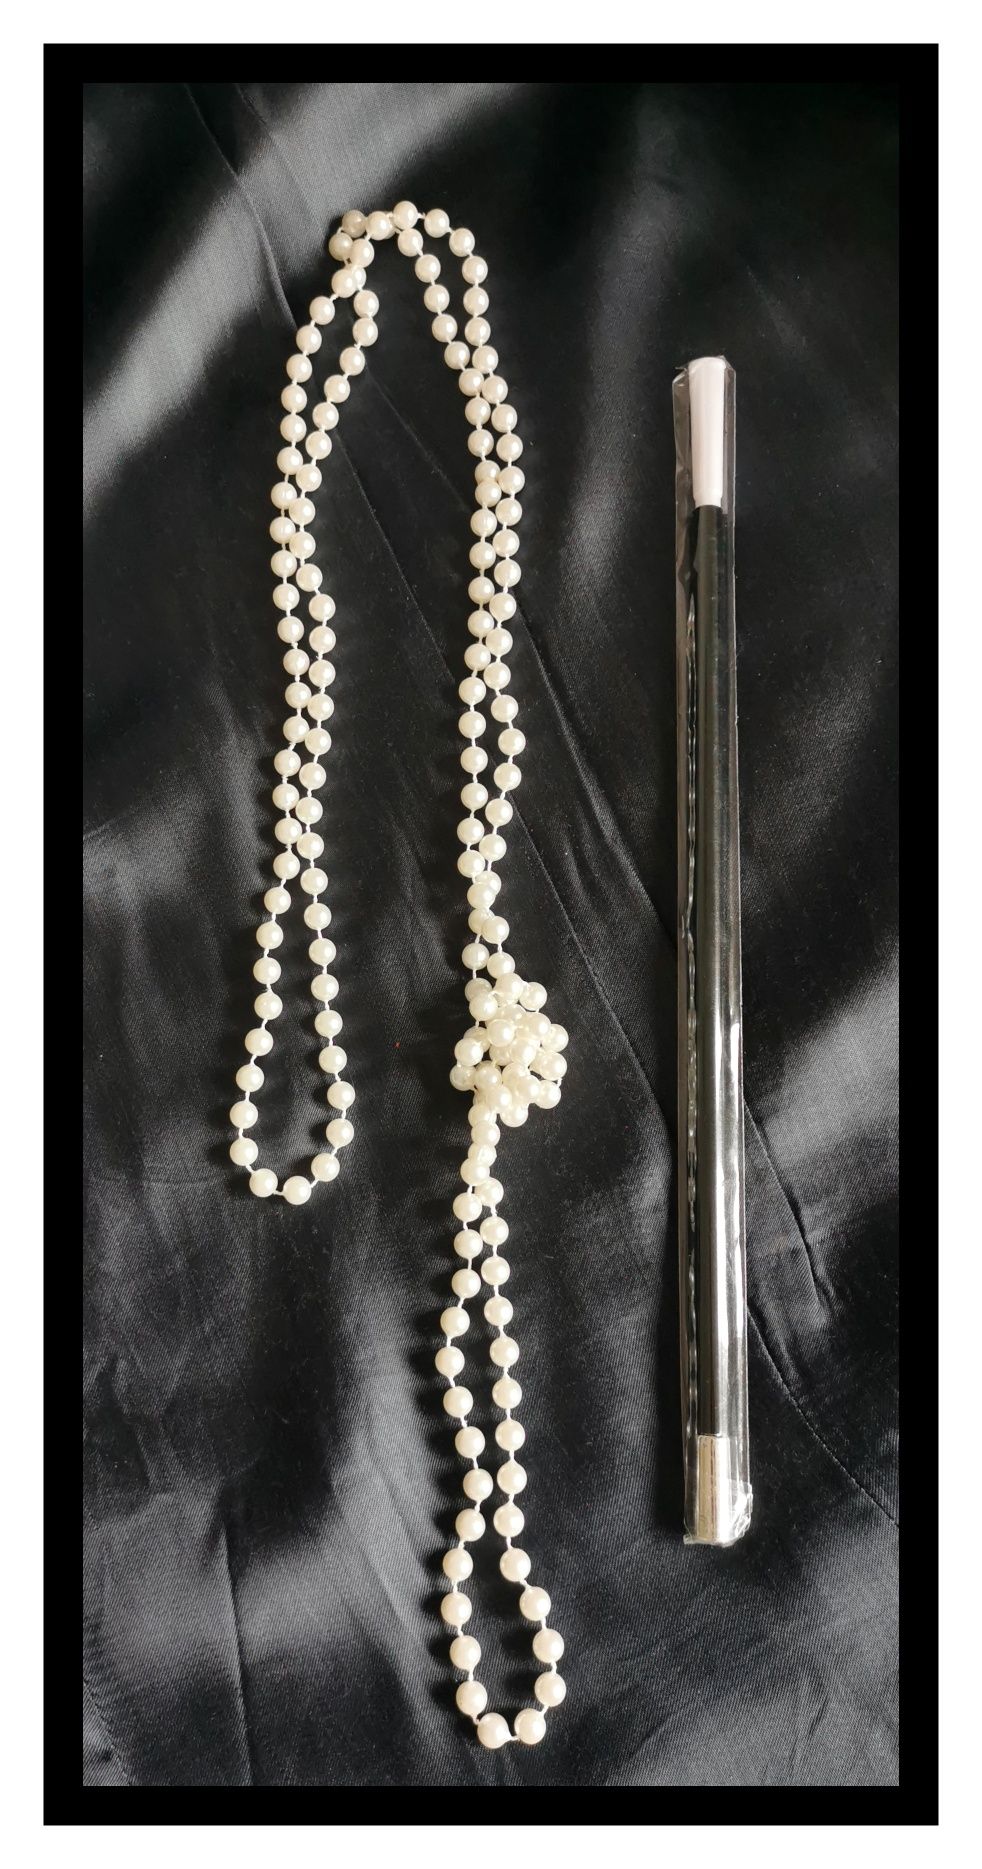 Zestaw kostiumowy: Długie perły (86cm) oraz dł. papieros/cygaretka os